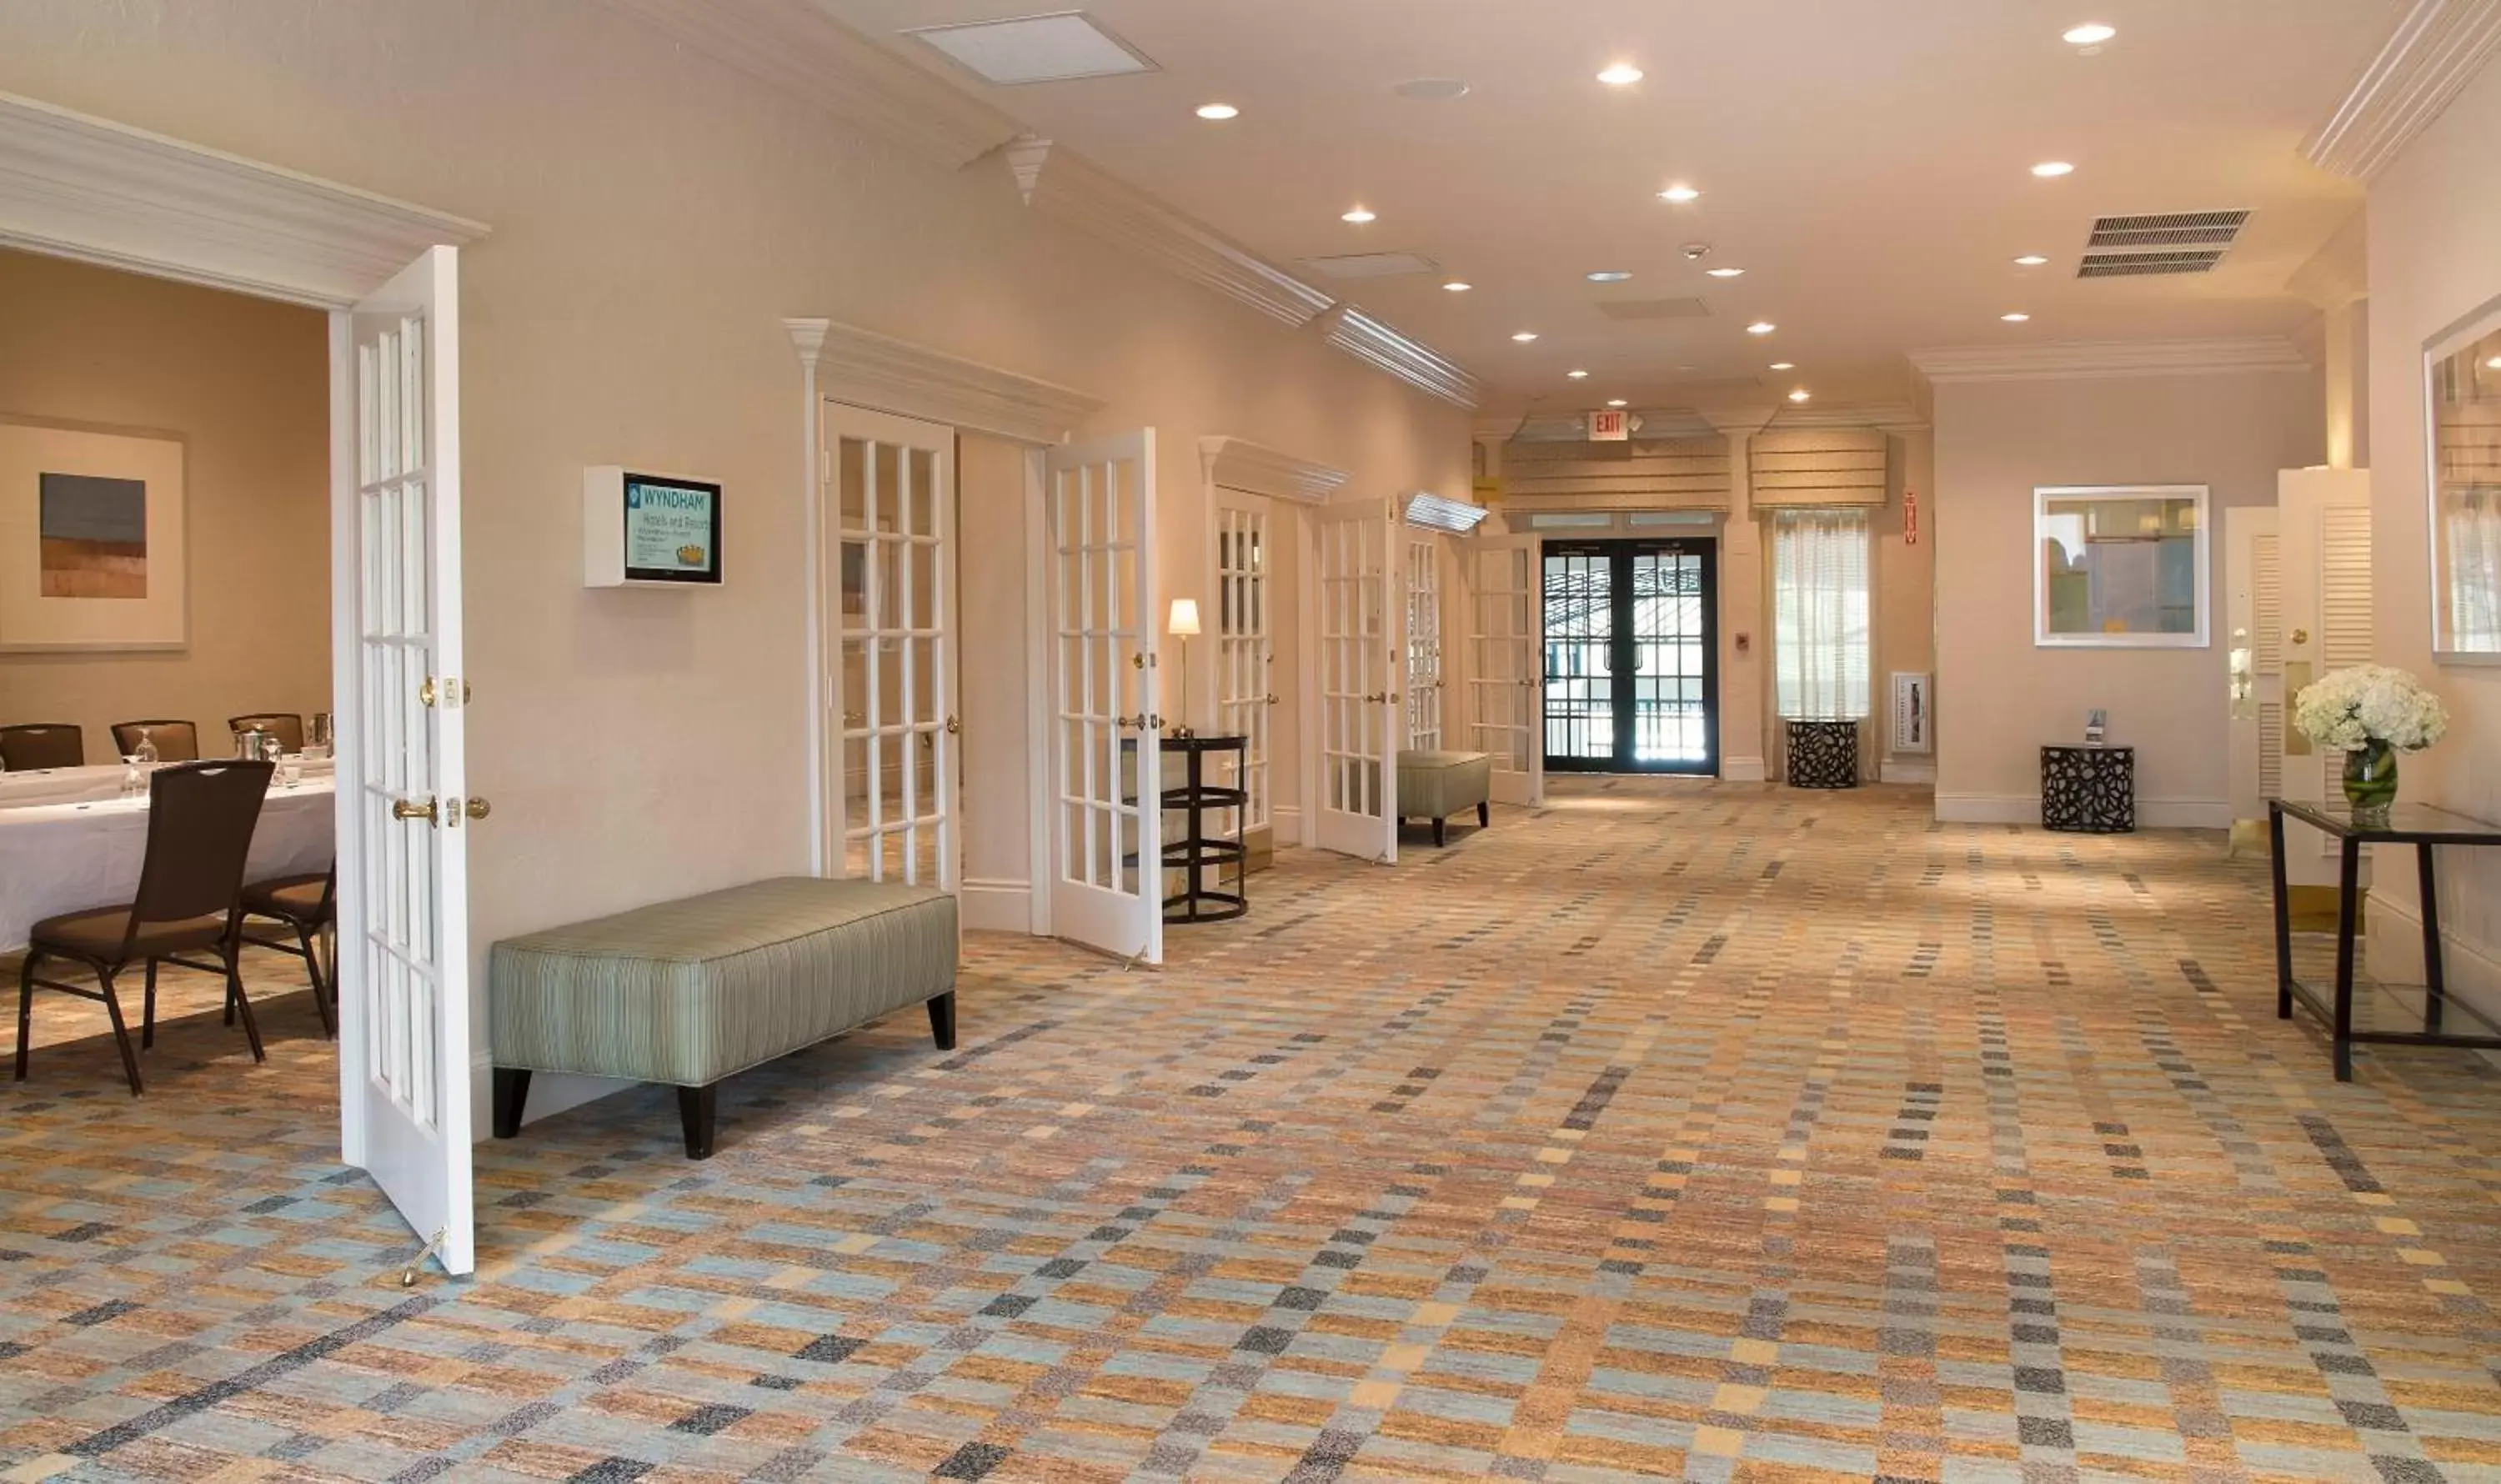 Lobby or reception in Wyndham Boca Raton Hotel